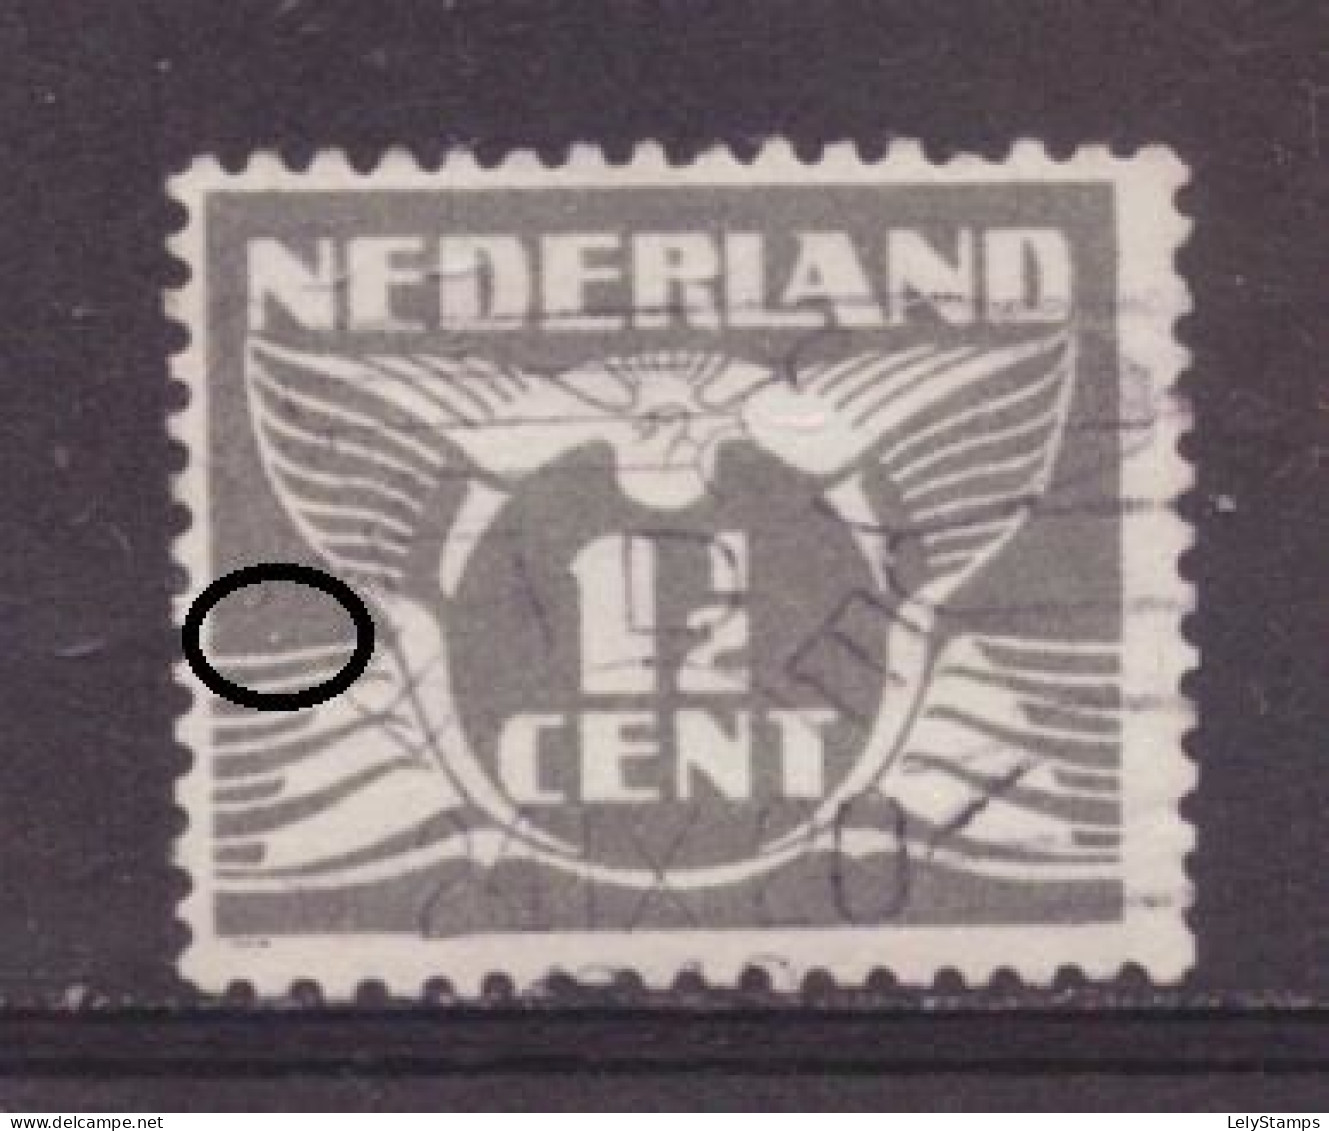 Nederland / Niederlande / Pays Bas / Netherlands 172 PM7 Plaatfout Plate Error Used (1935) - Abarten Und Kuriositäten